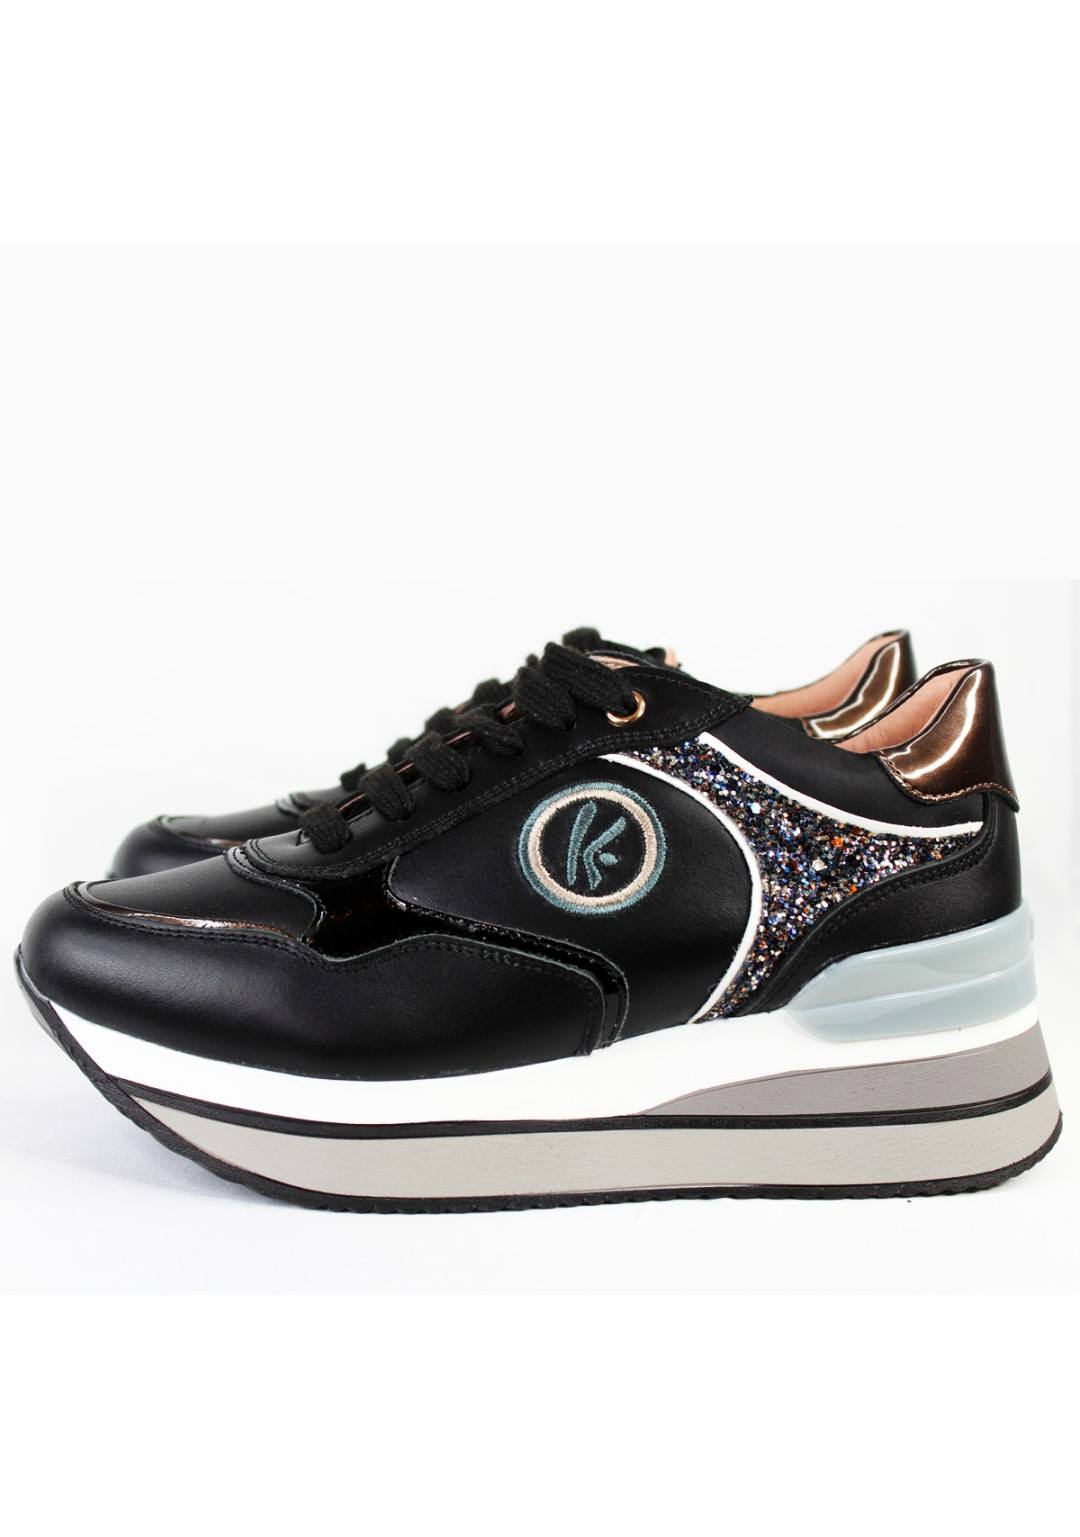 KEYS - Sneaker platform - Donna - K-6883N